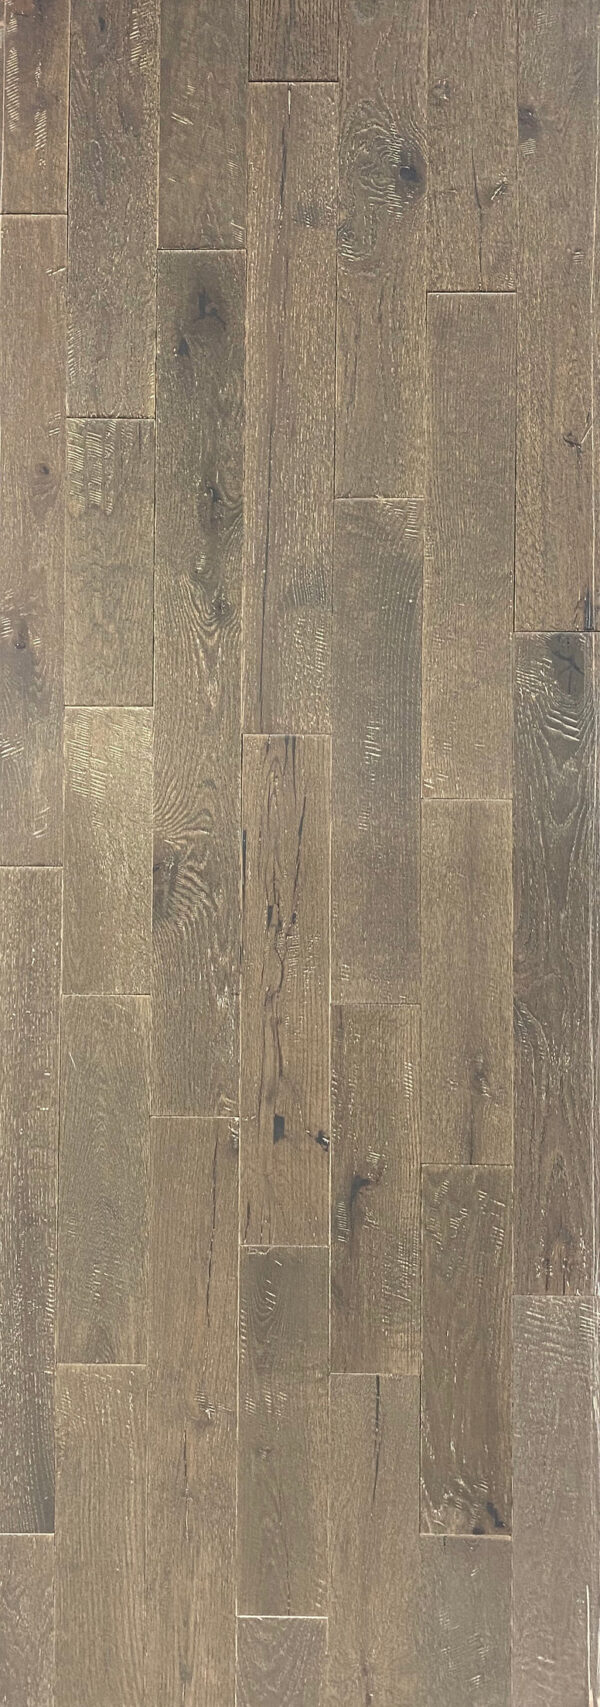 Oak Granite Hardwood Flooring